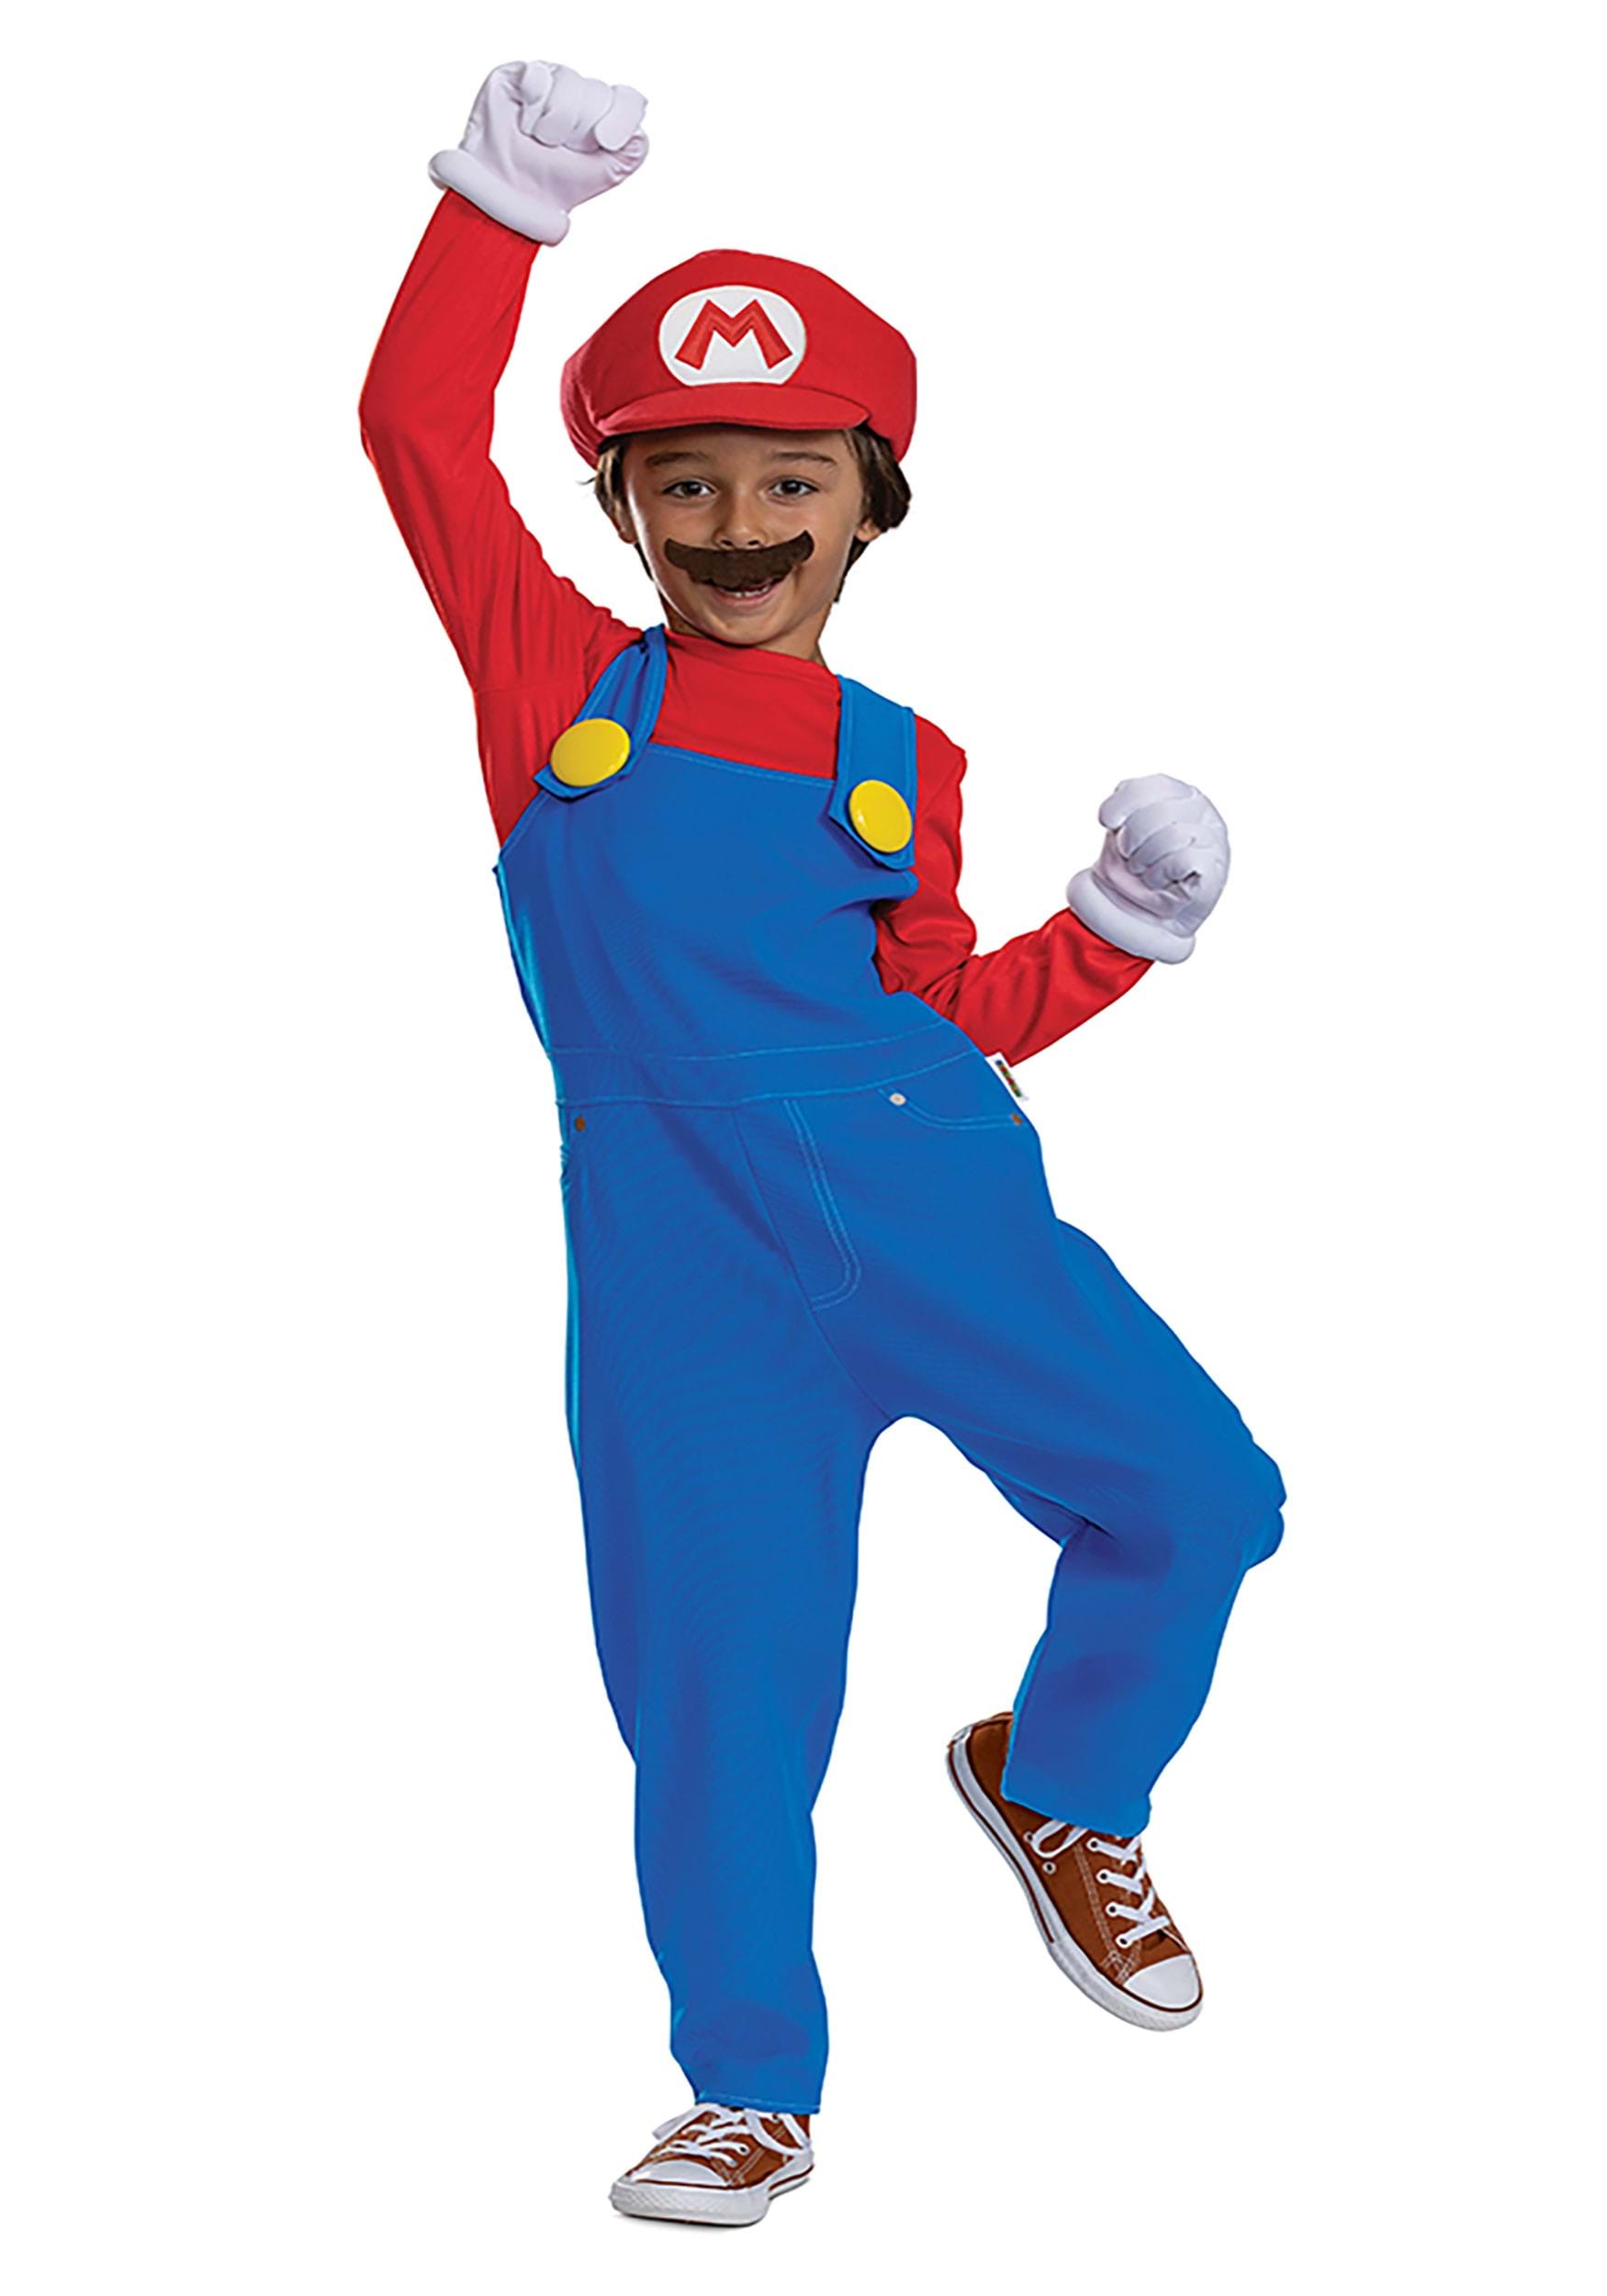 Image of Kid's Super Mario Bros Premium Mario Costume ID DI146319-4/6